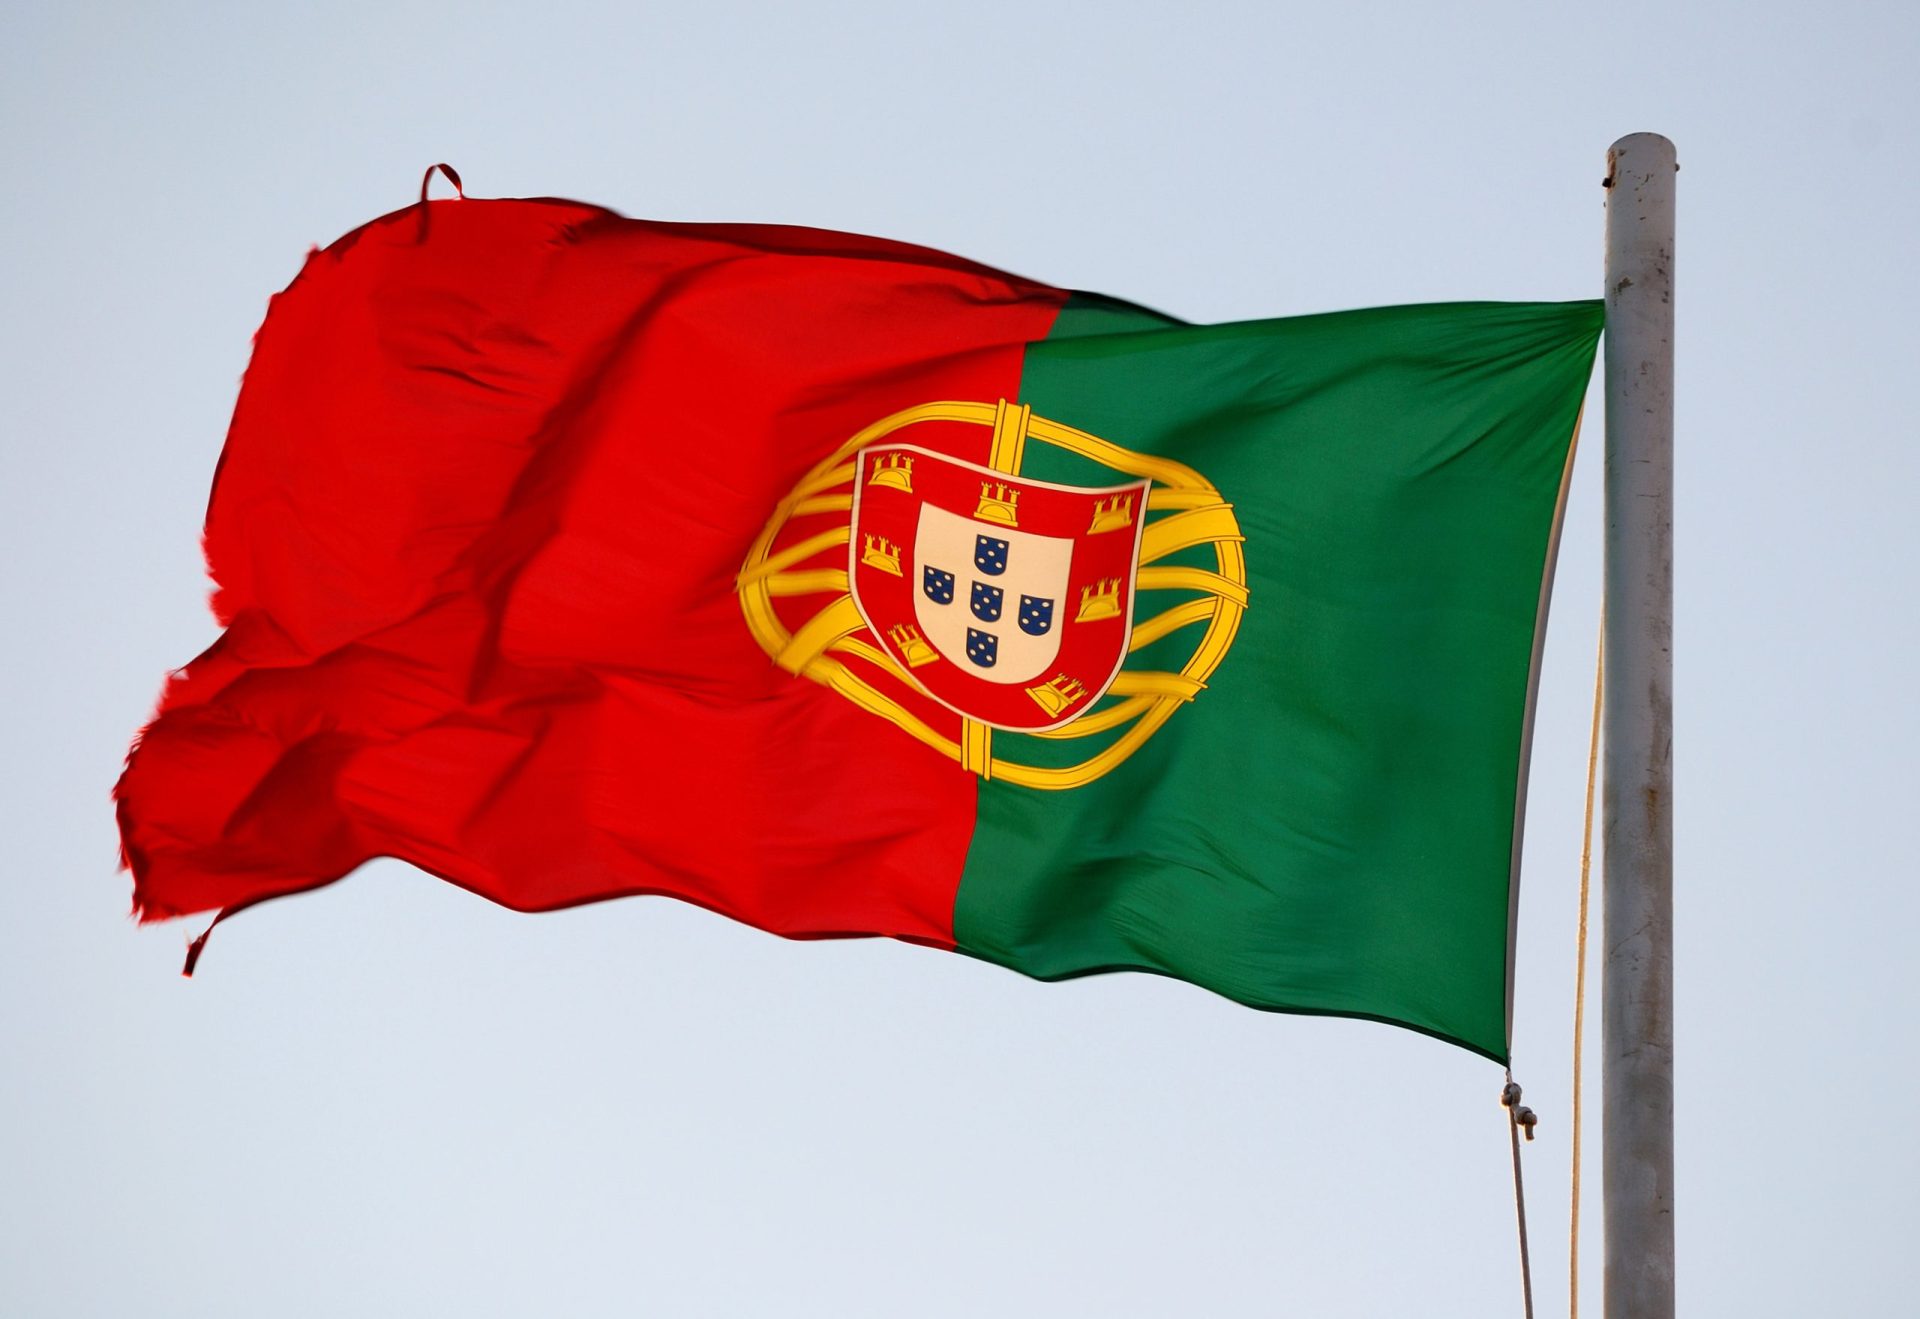 Assaltantes atacaram navio de bandeira portuguesa ao largo do Benim